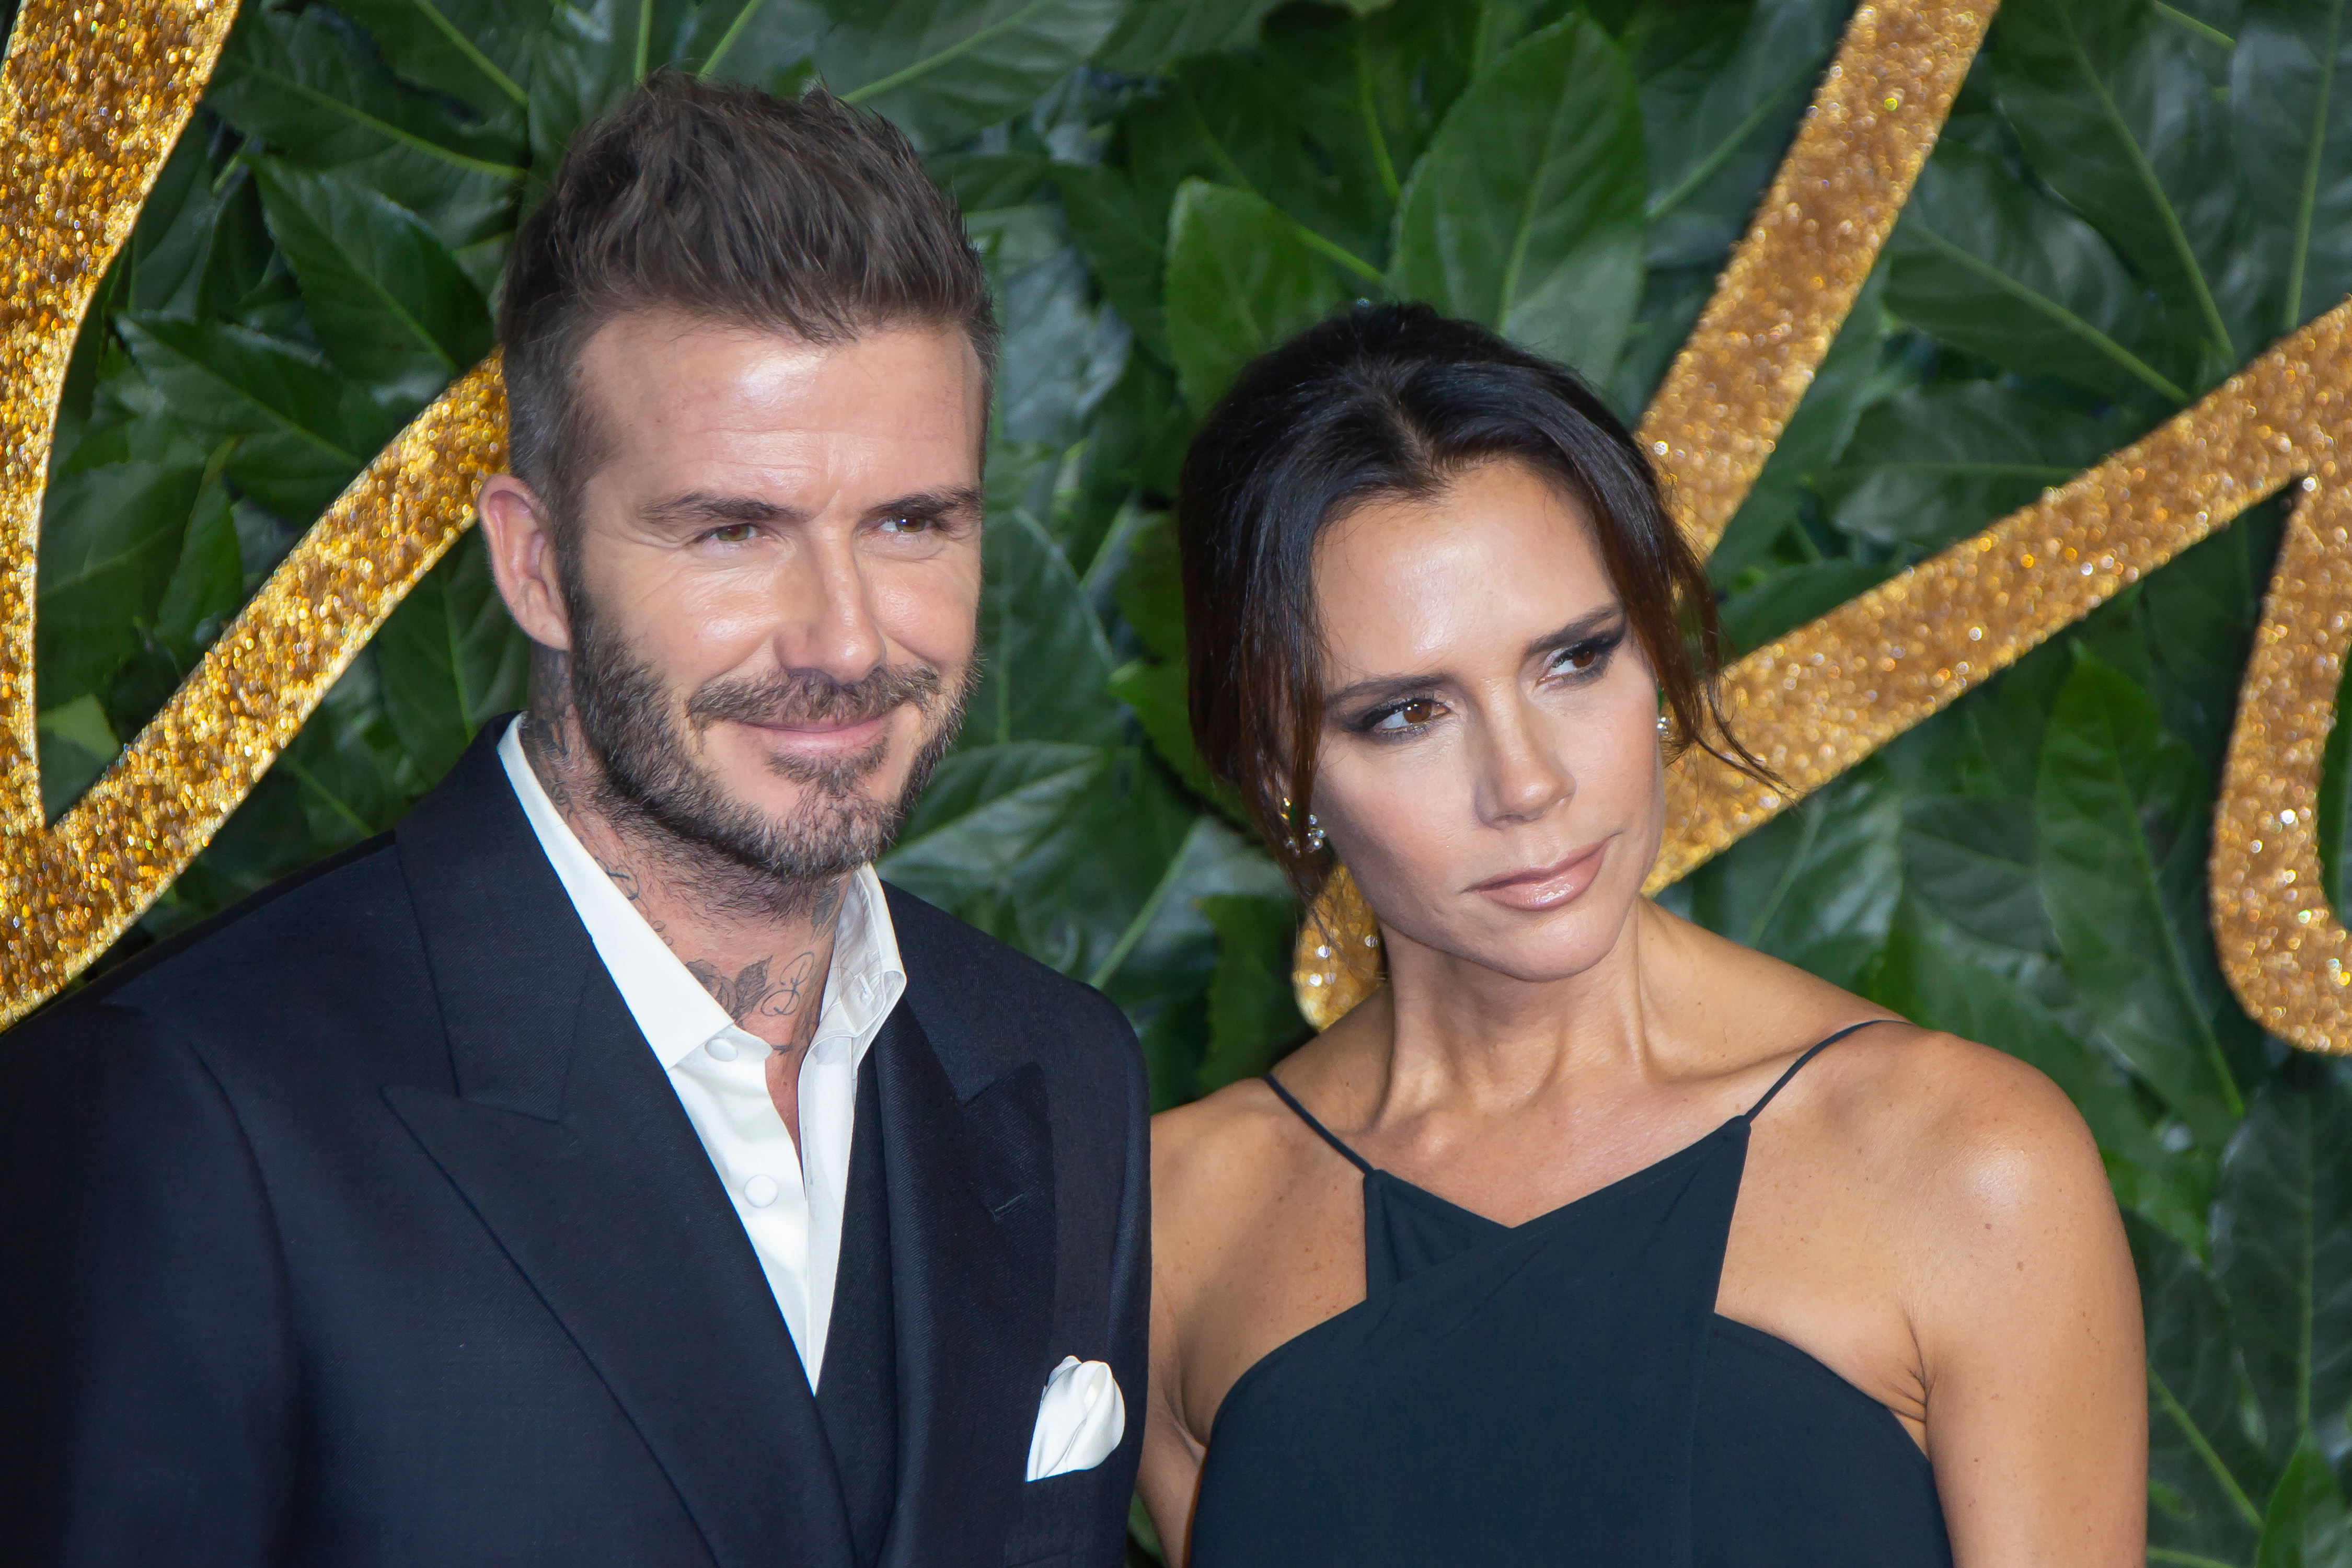 La pareja Beckham asistió a la presentación de la nueva colección de Reebok. (Foto Prensa Libre: Shutterstock)